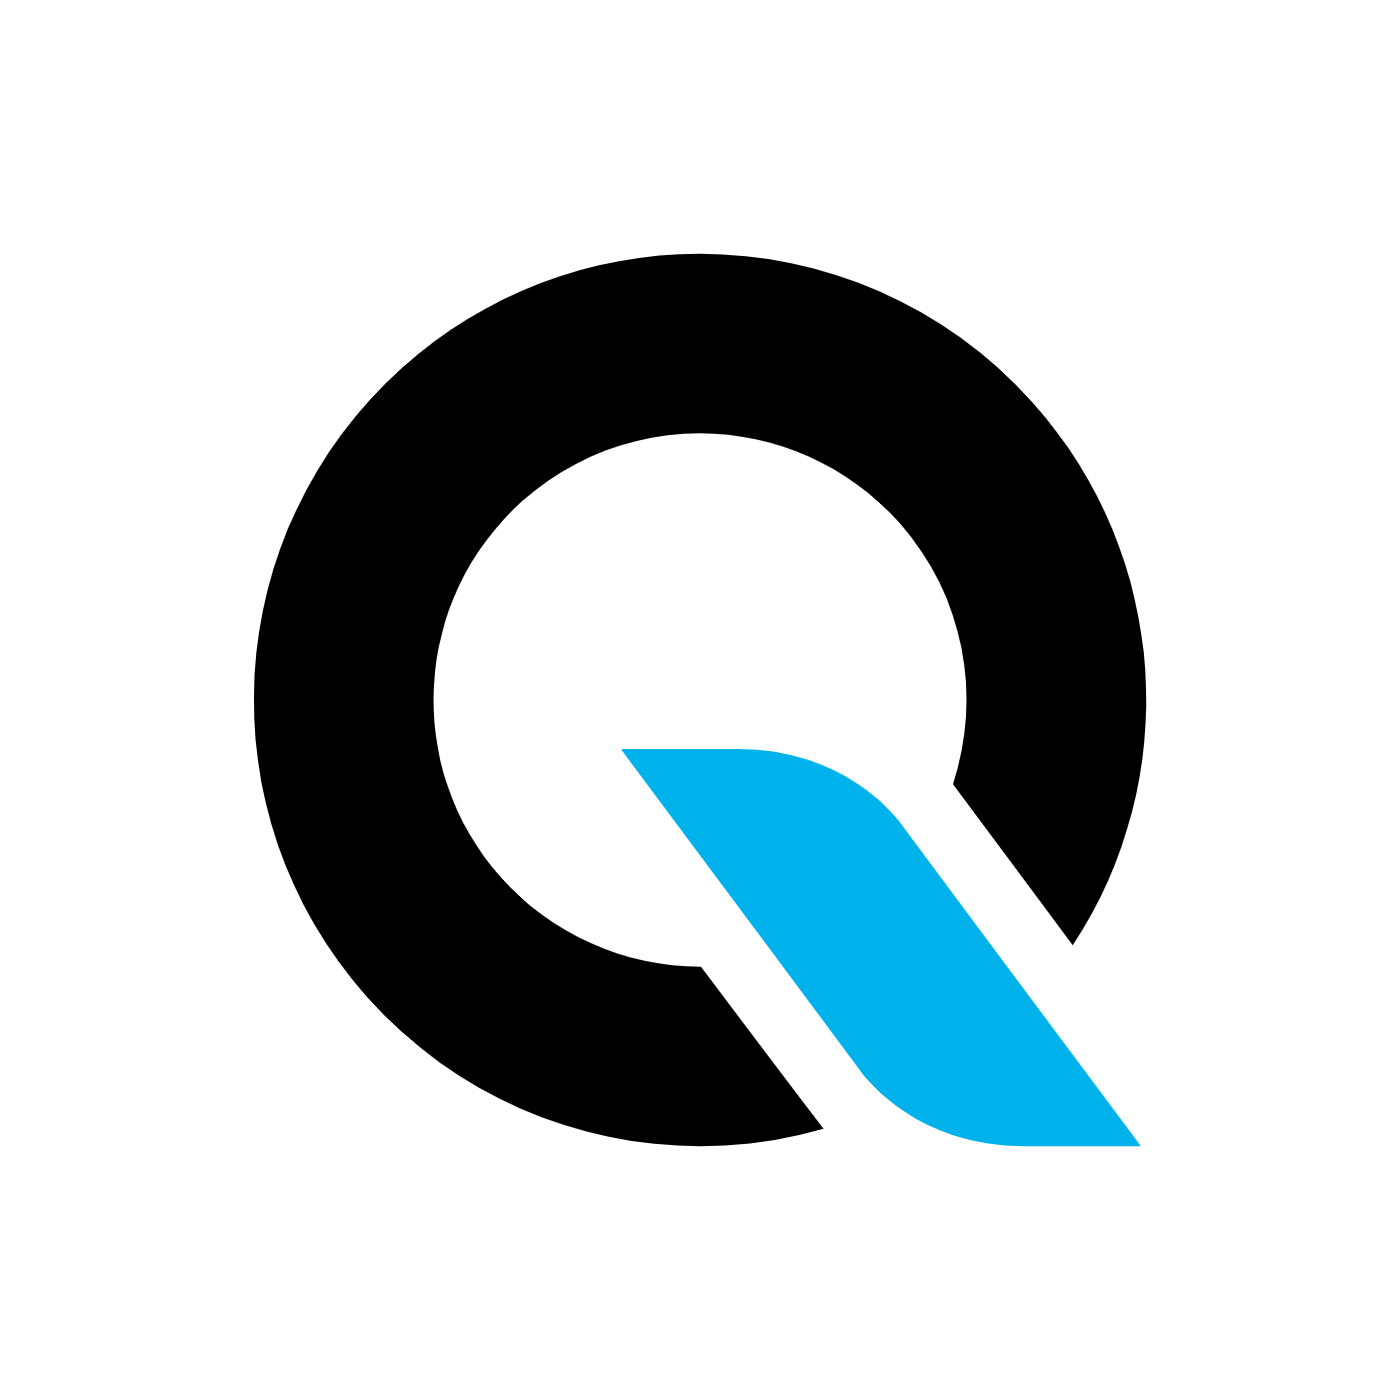 QI logo